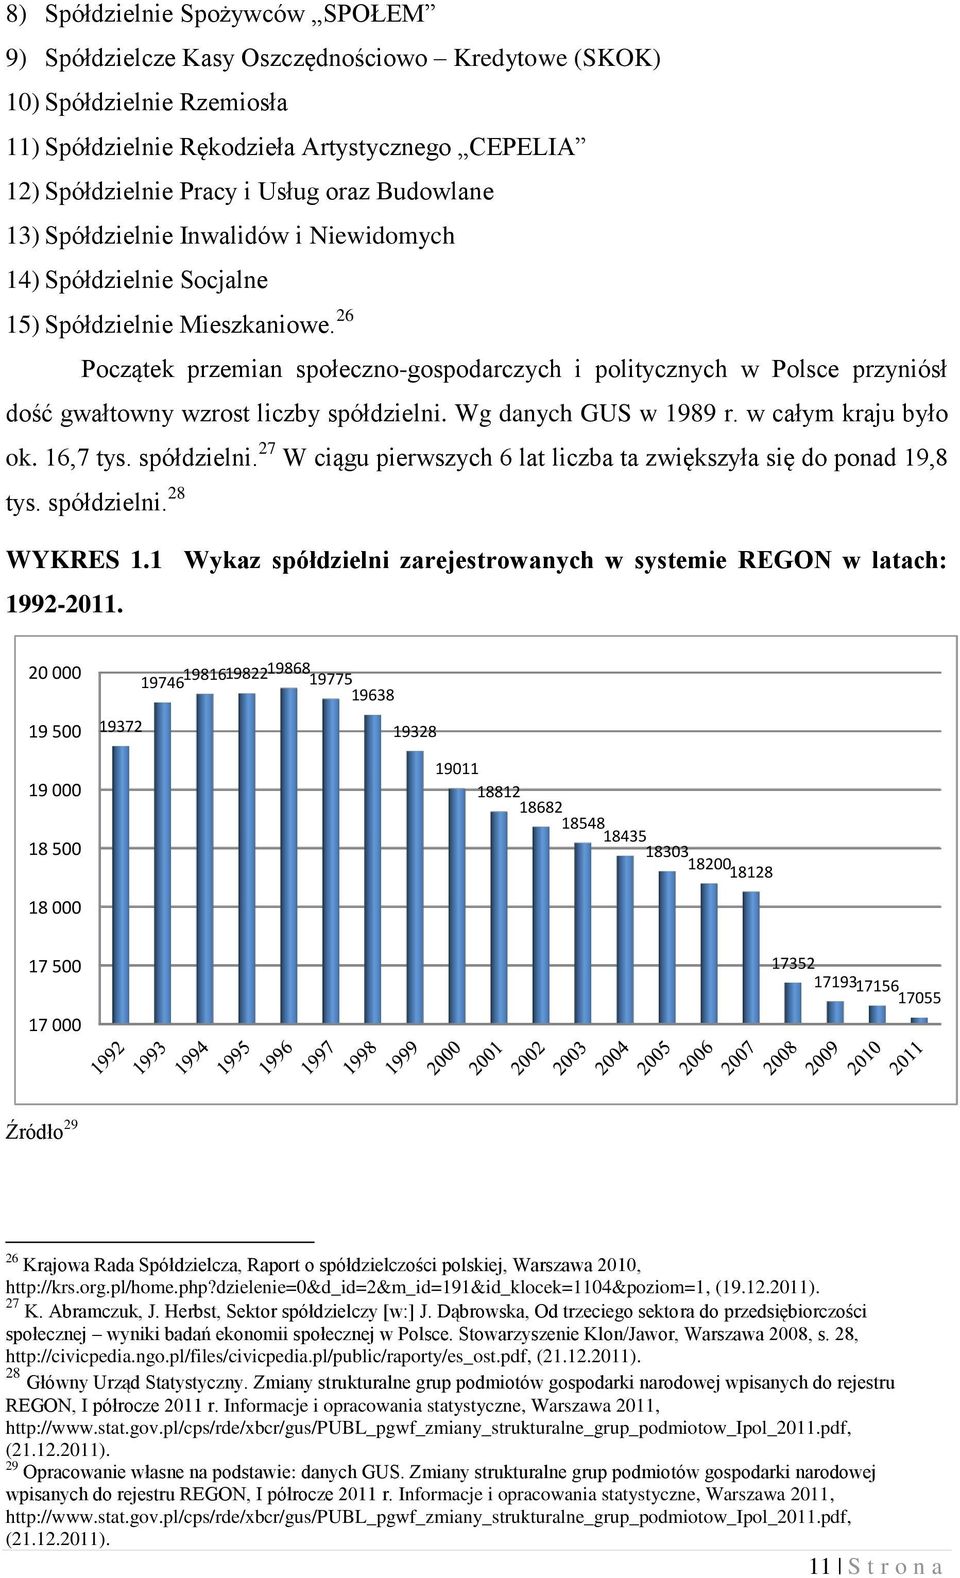 26 Początek przemian społeczno-gospodarczych i politycznych w Polsce przyniósł dość gwałtowny wzrost liczby spółdzielni. Wg danych GUS w 1989 r. w całym kraju było ok. 16,7 tys. spółdzielni. 27 W ciągu pierwszych 6 lat liczba ta zwiększyła się do ponad 19,8 tys.